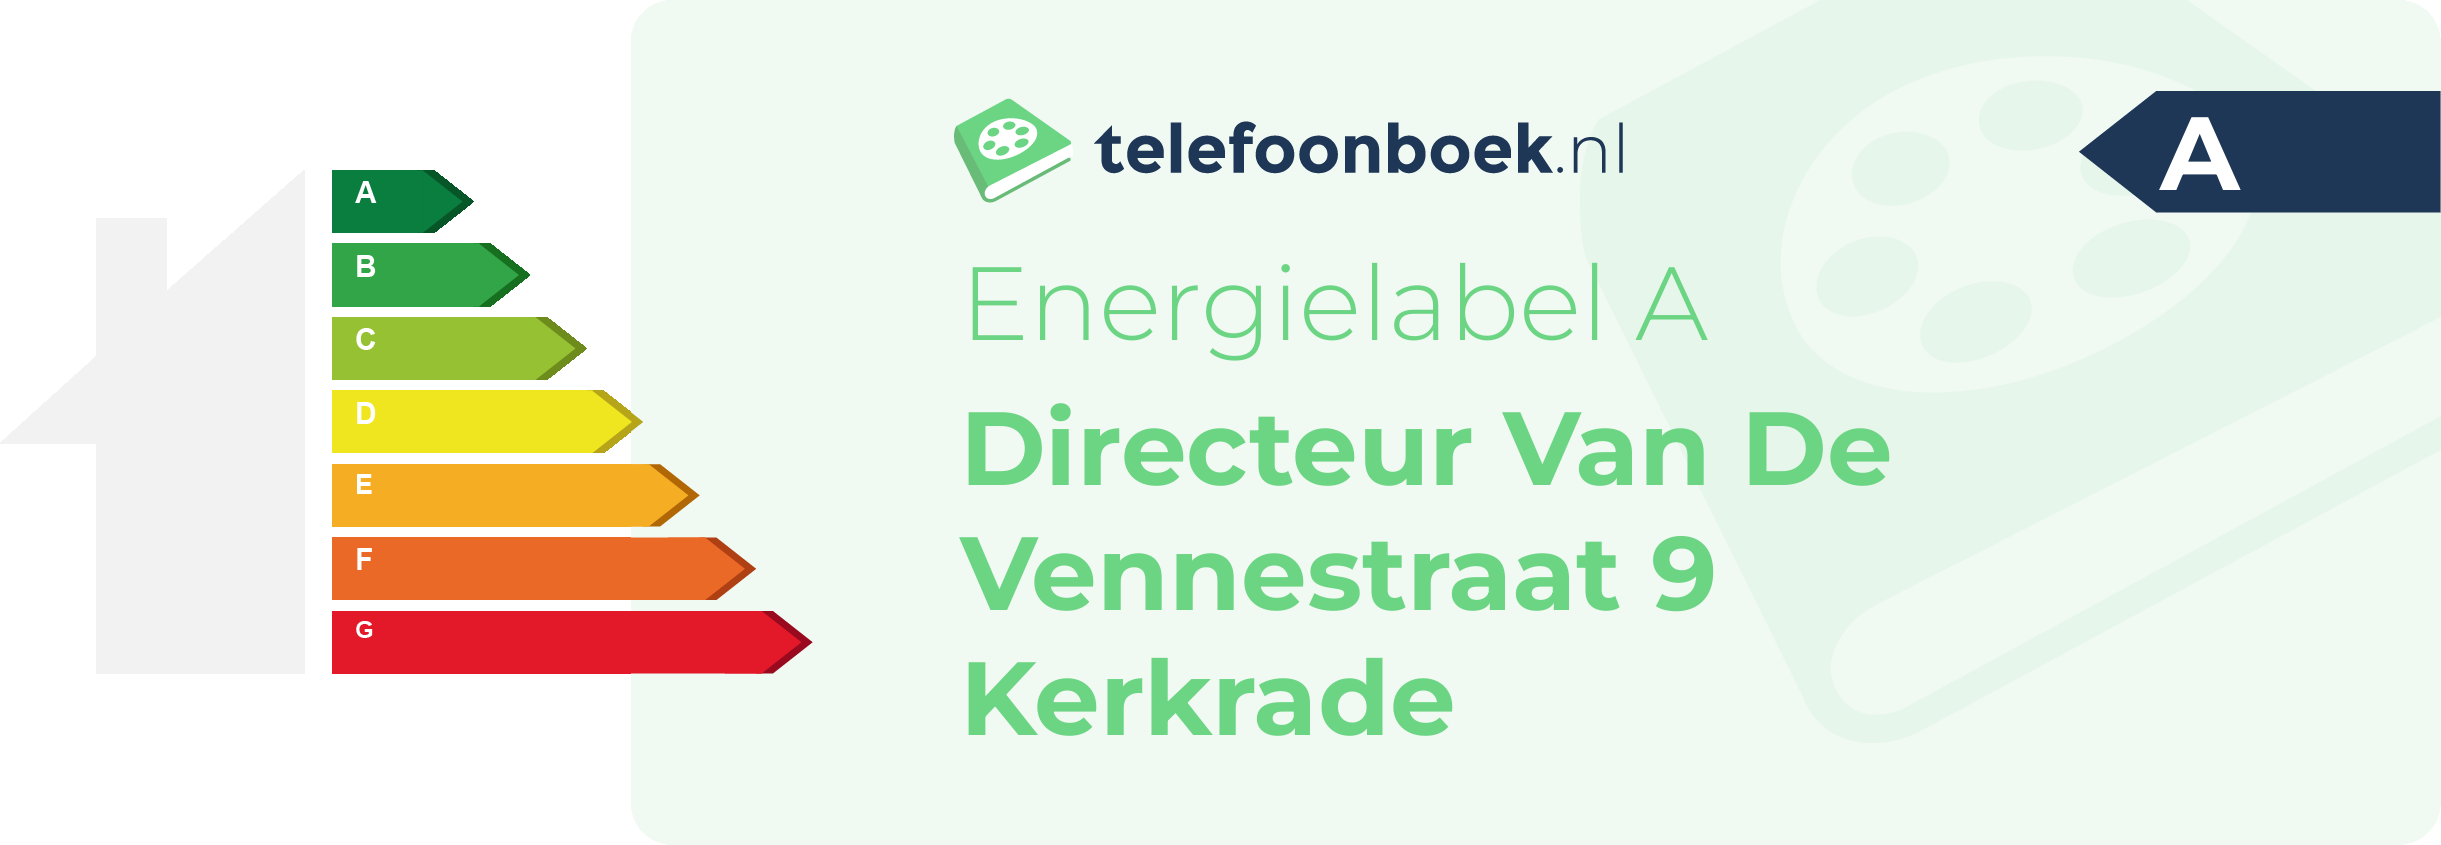 Energielabel Directeur Van De Vennestraat 9 Kerkrade